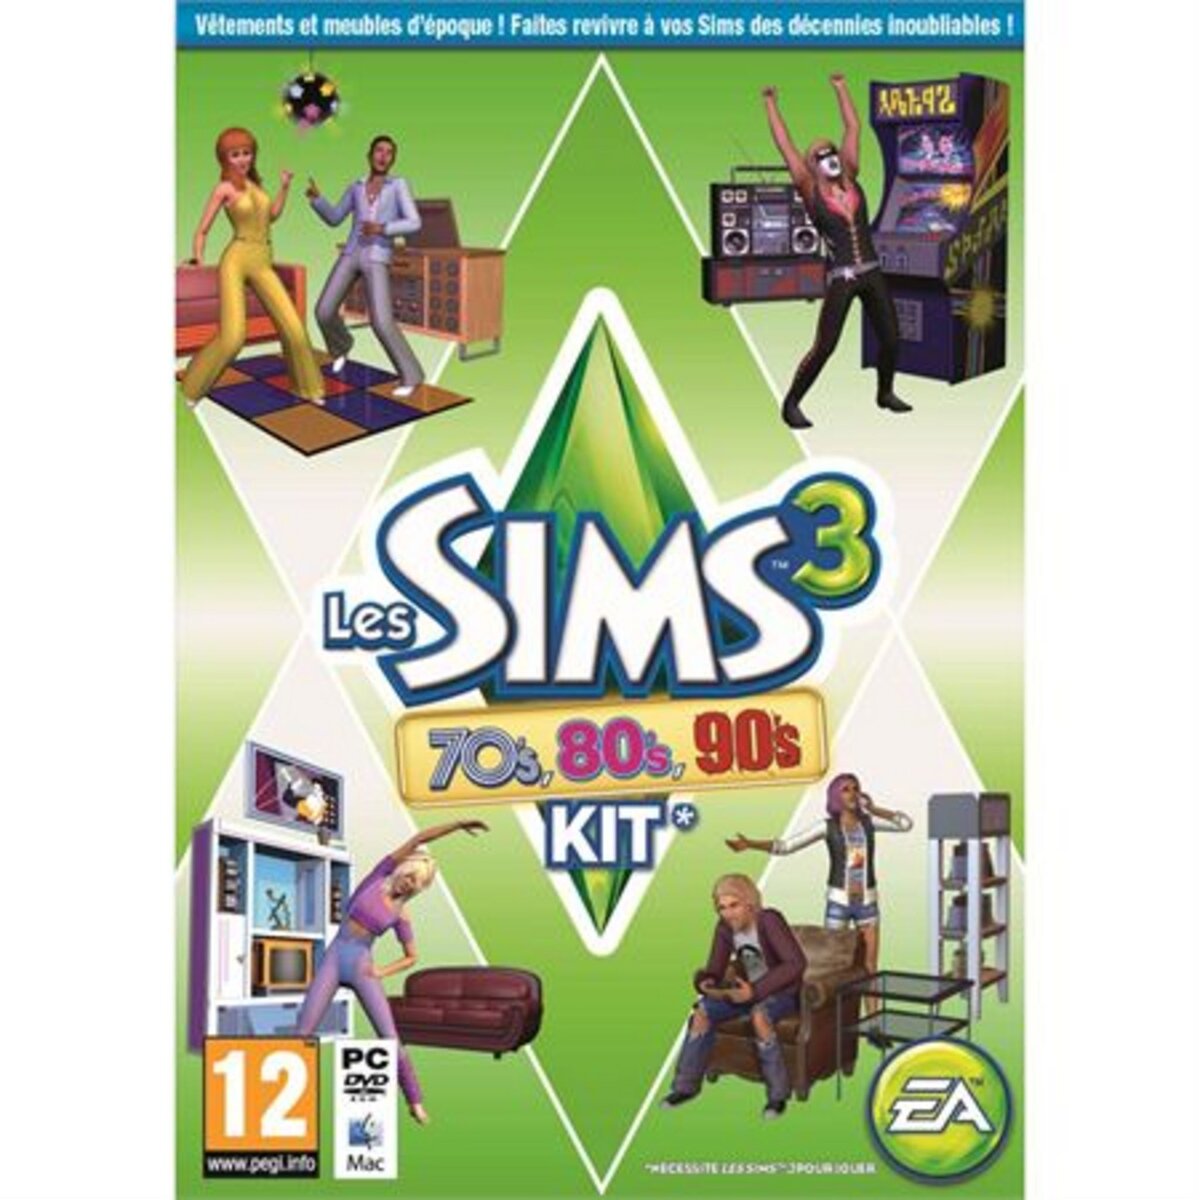 Les Sims 3 70's, 80's, 90's